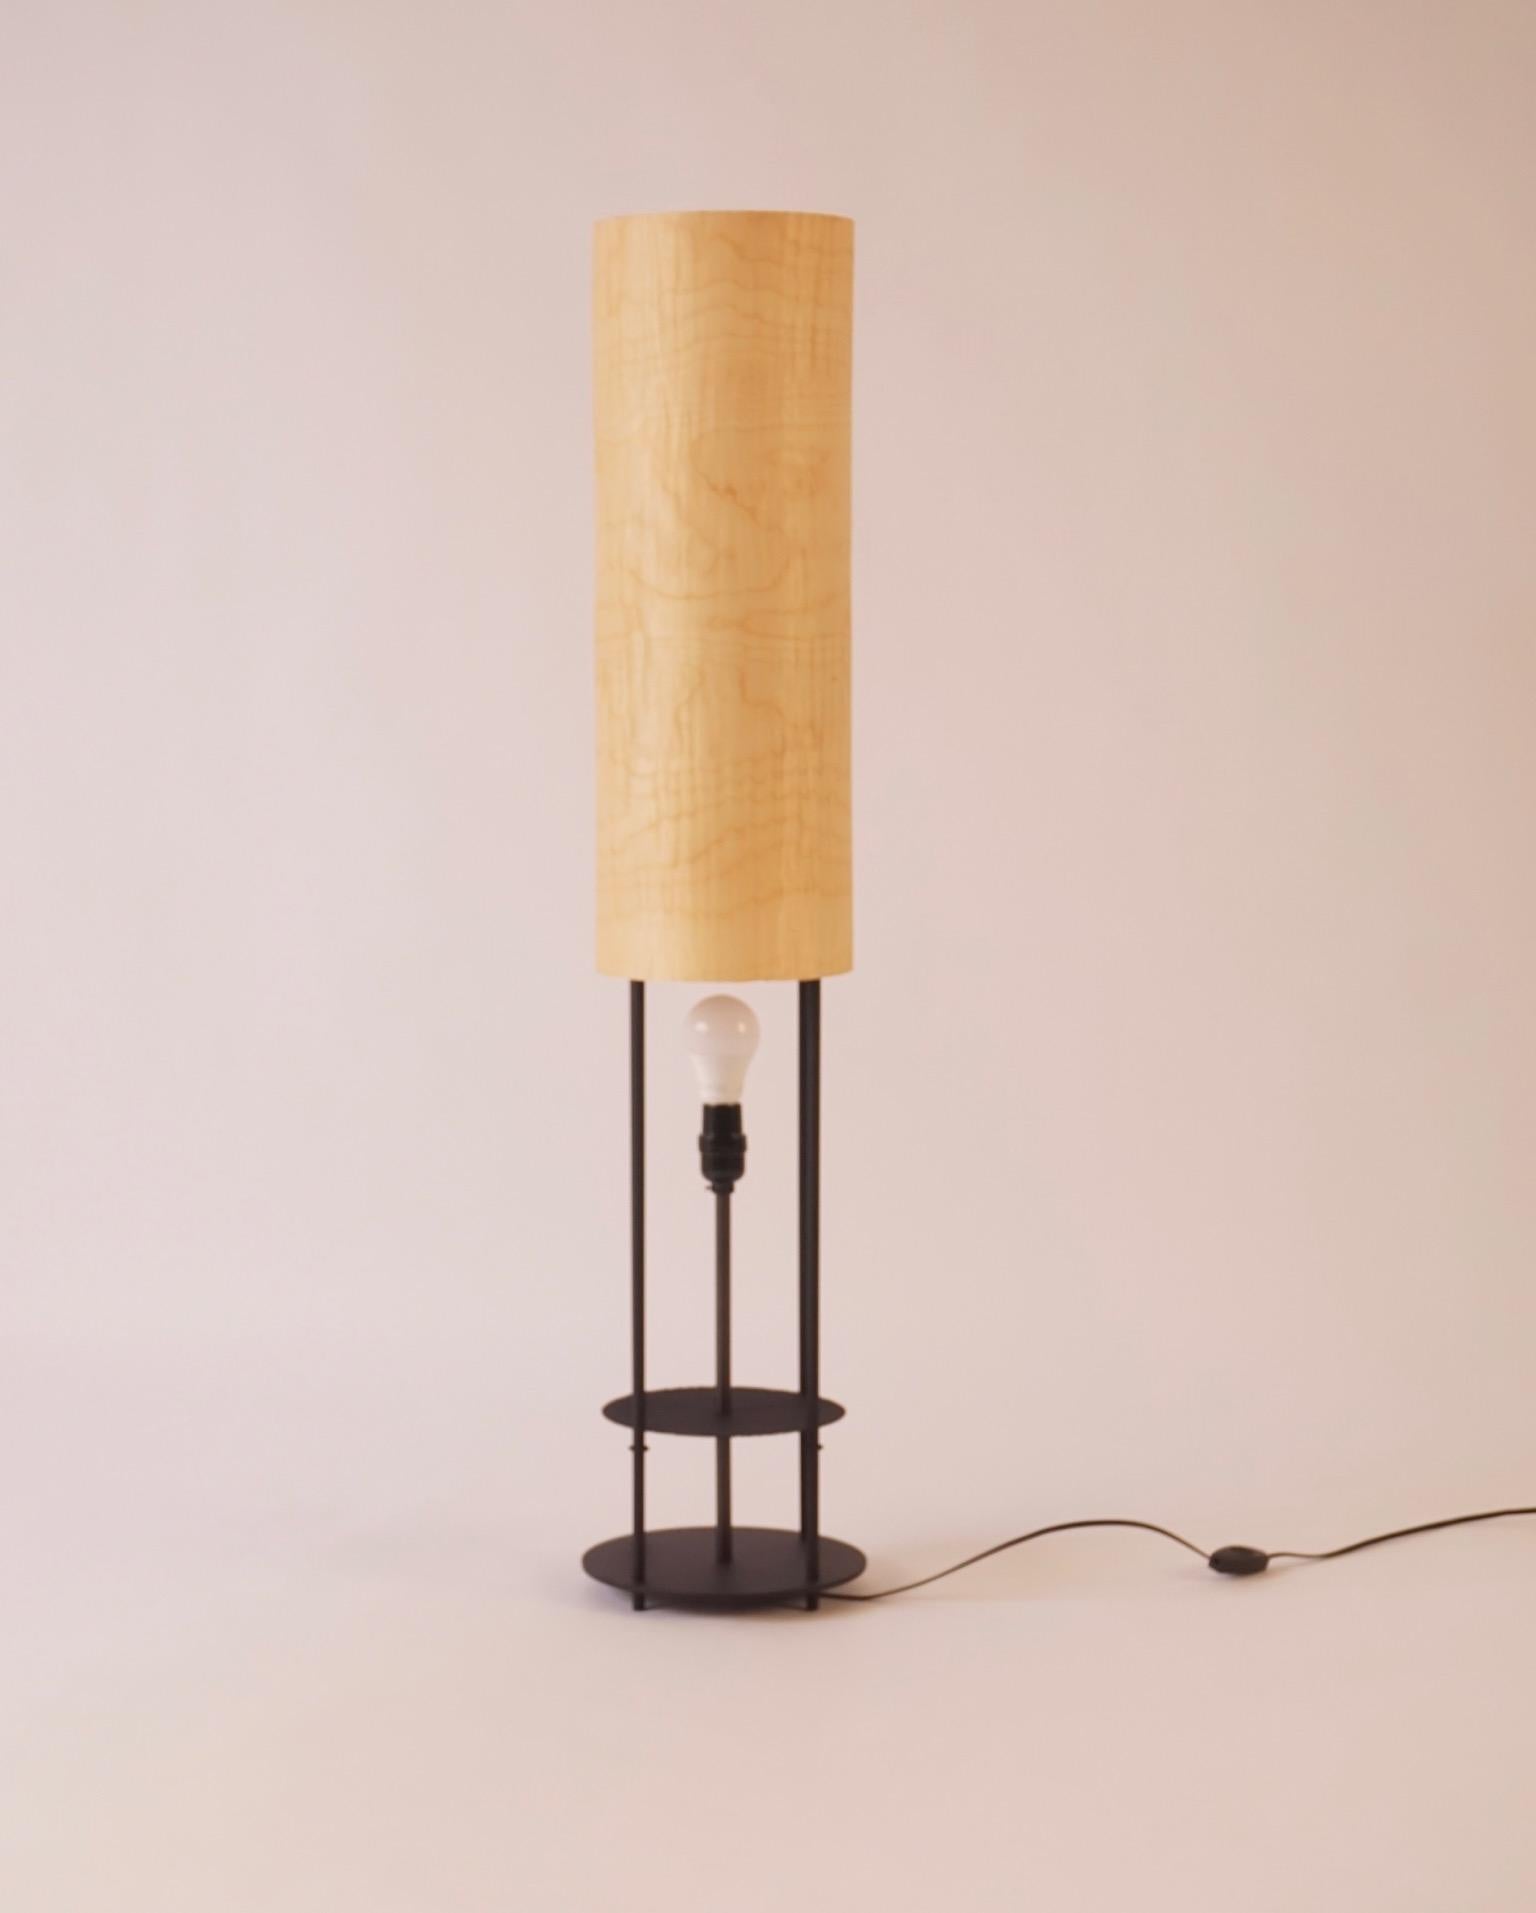 Maple Wood Veneer Lantern #5 with Blackened Metal Frame For Sale 2